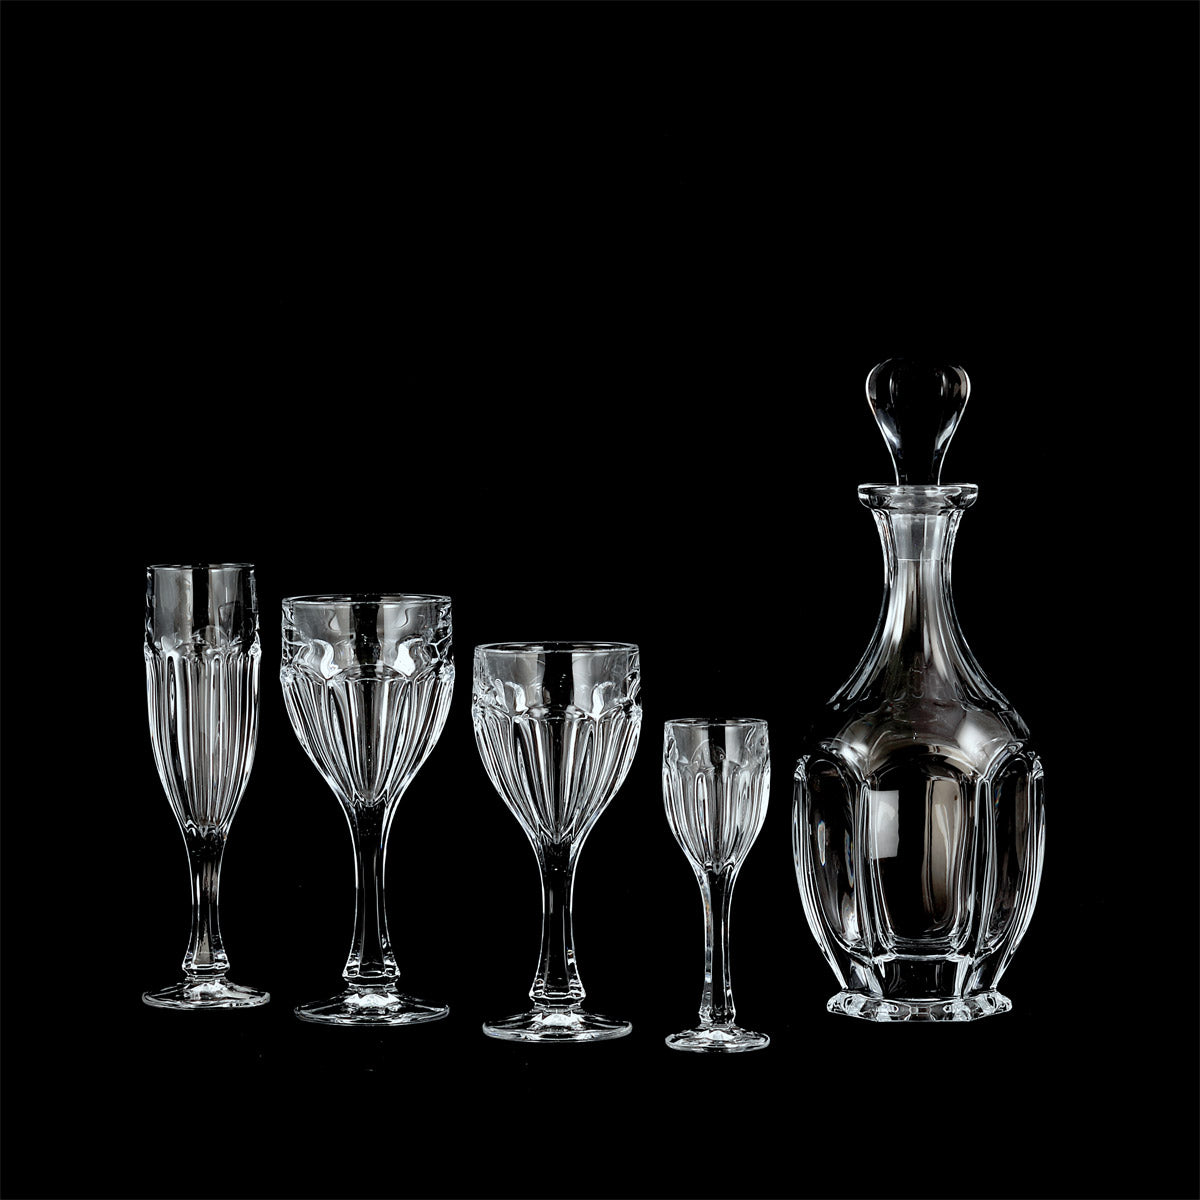 http://marticastore.com/cdn/shop/products/servizio-bicchieri-classico-molato-coste-cristallo-vienna.jpg?v=1679918081